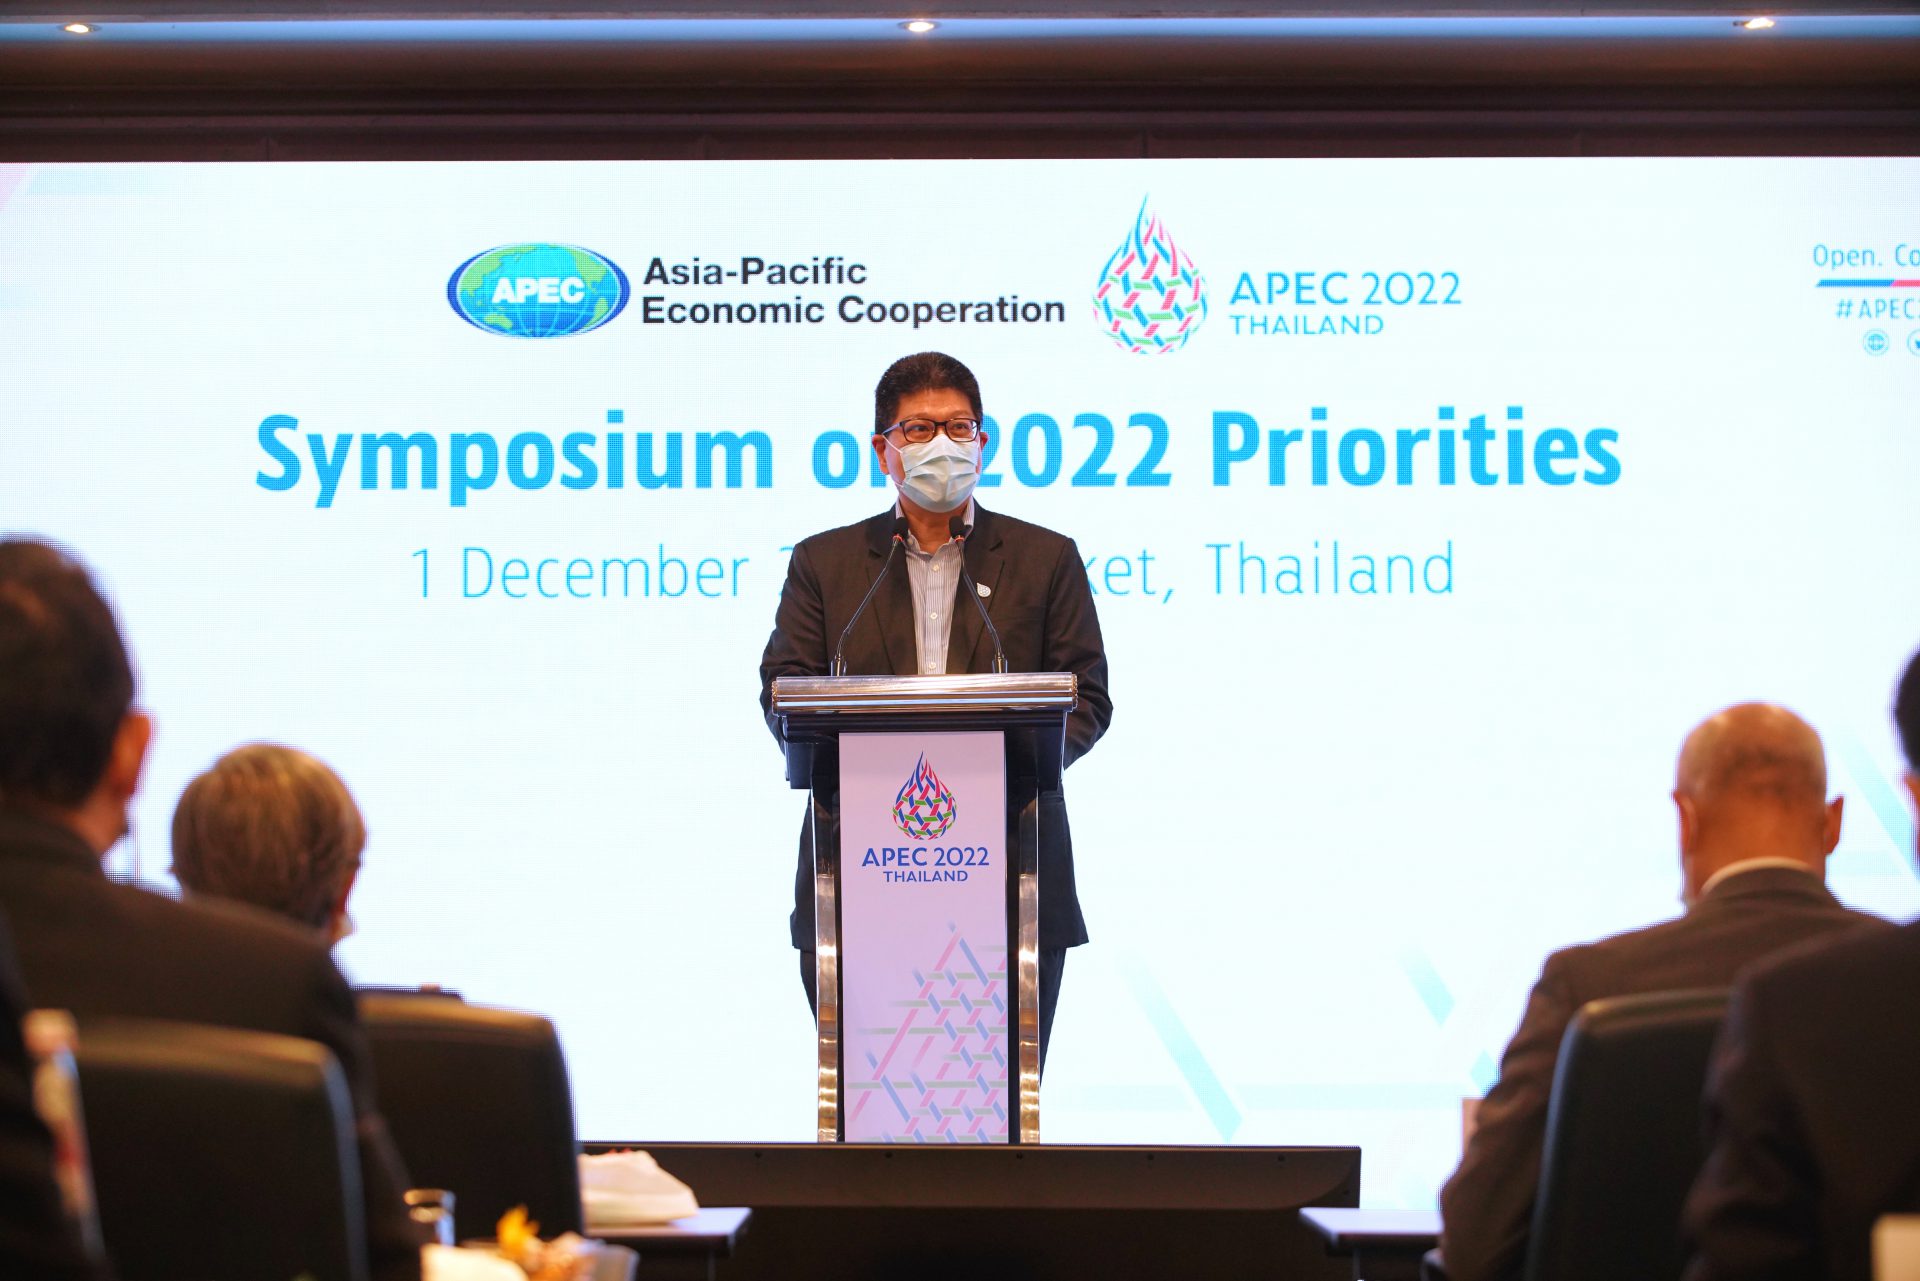 APEC Symposium on 2022 Priorities. APEC 2022 Thailand